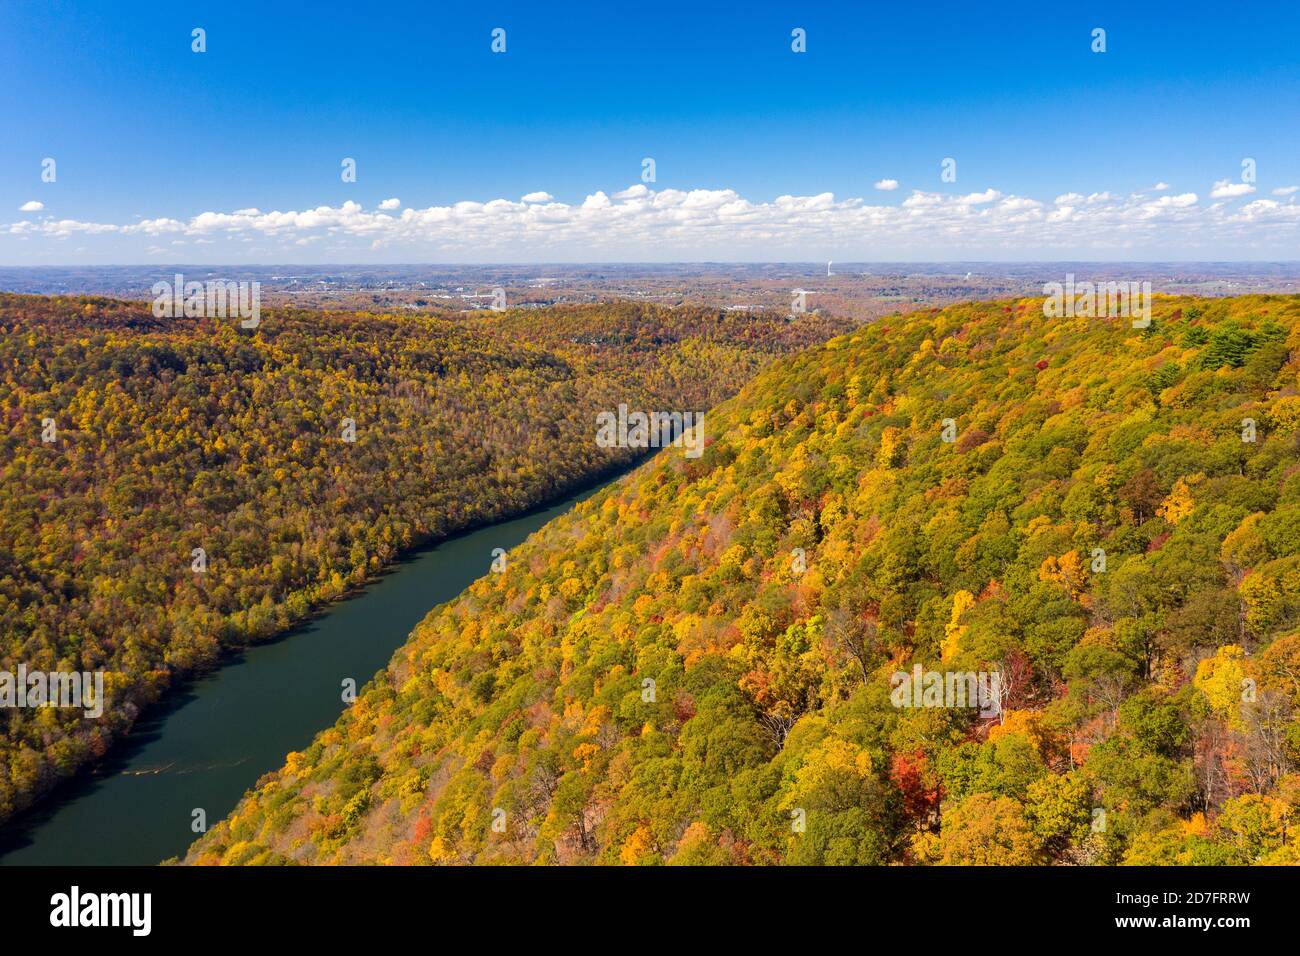 Image d'un drone aérien de la rivière Cheat qui coule dans des gorges boisées étroites en automne vers le lac Cheat près de Morgantown, WV Banque D'Images